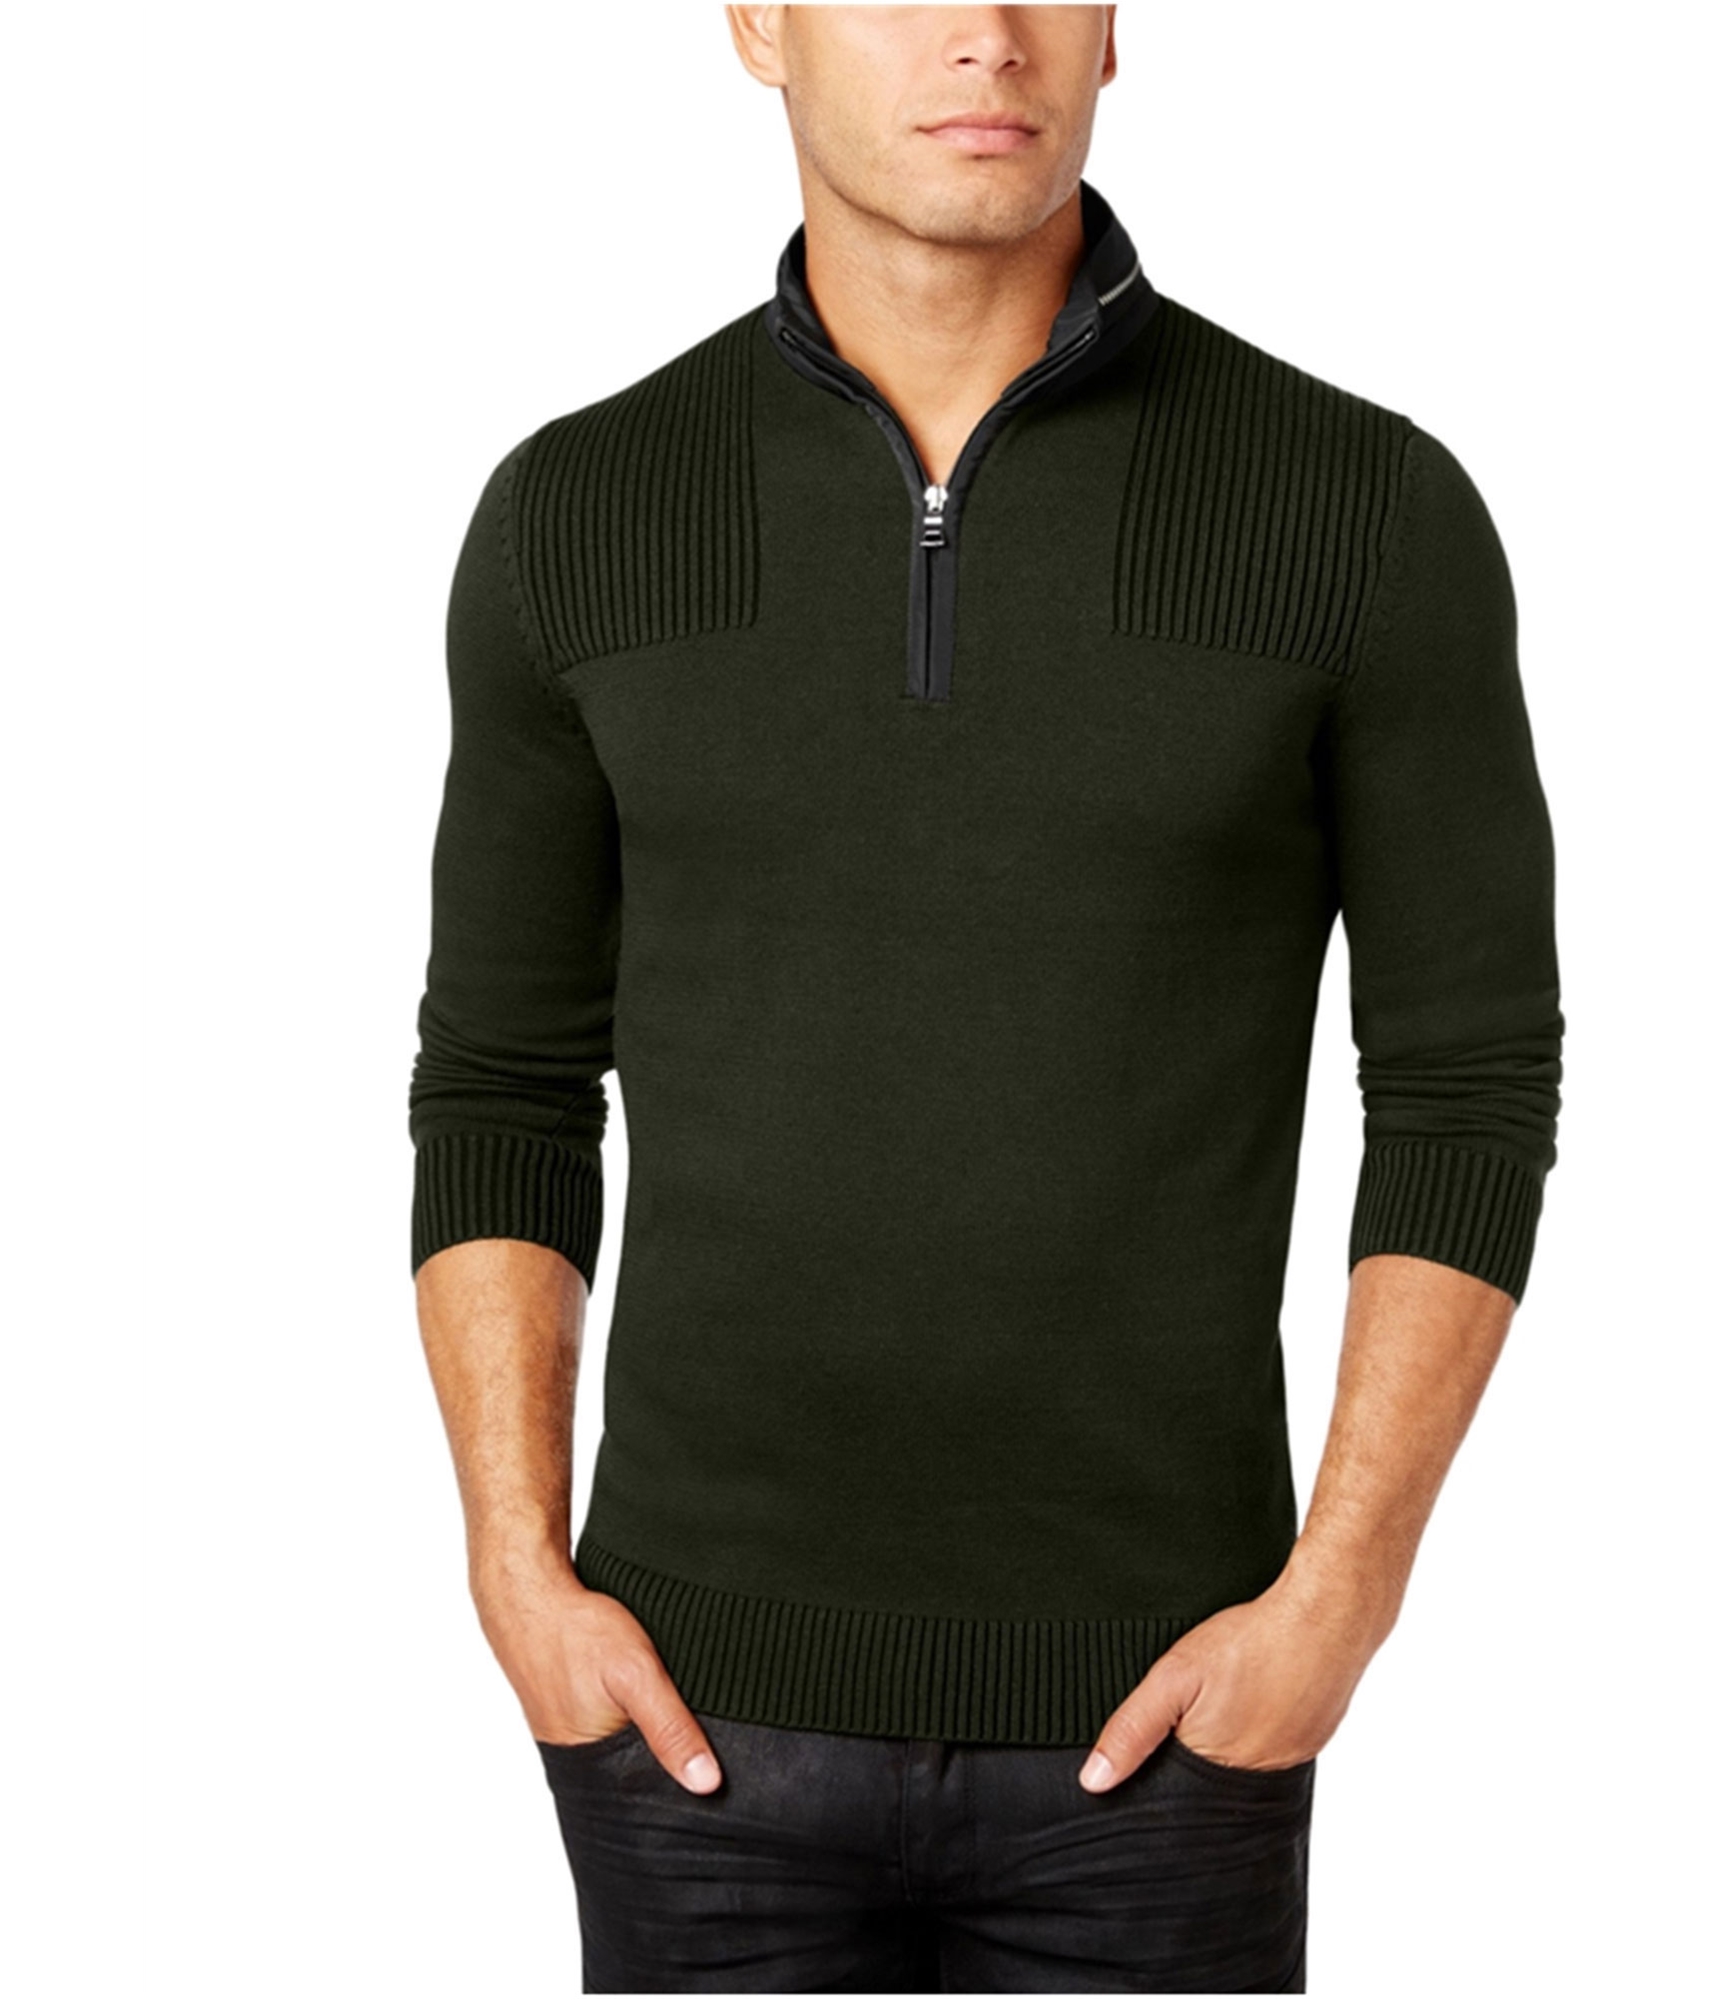 I-N-C Mens Quarter Zip Pullover Sweater, Green, Medium | eBay